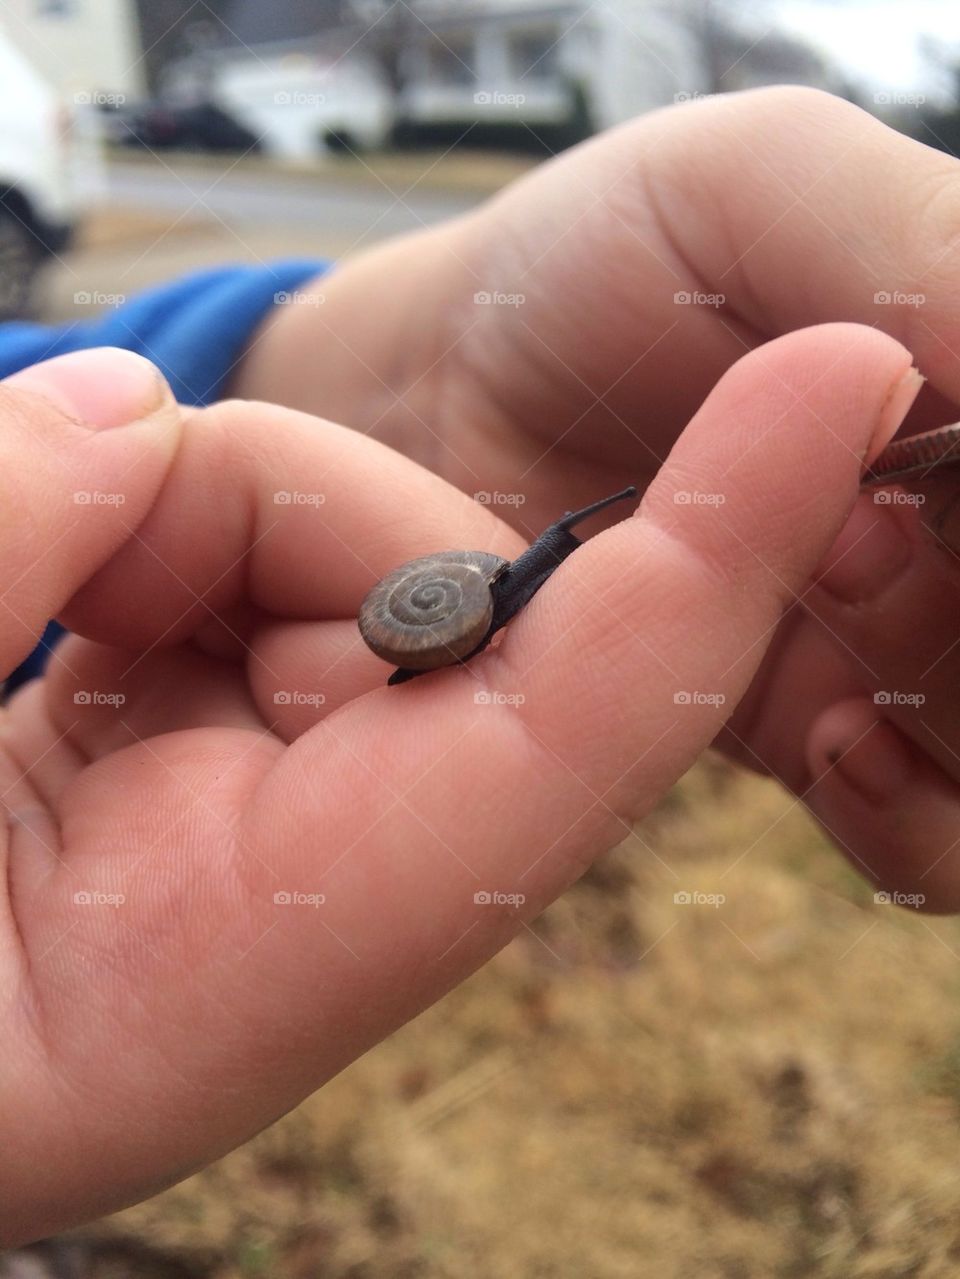 Snail hand